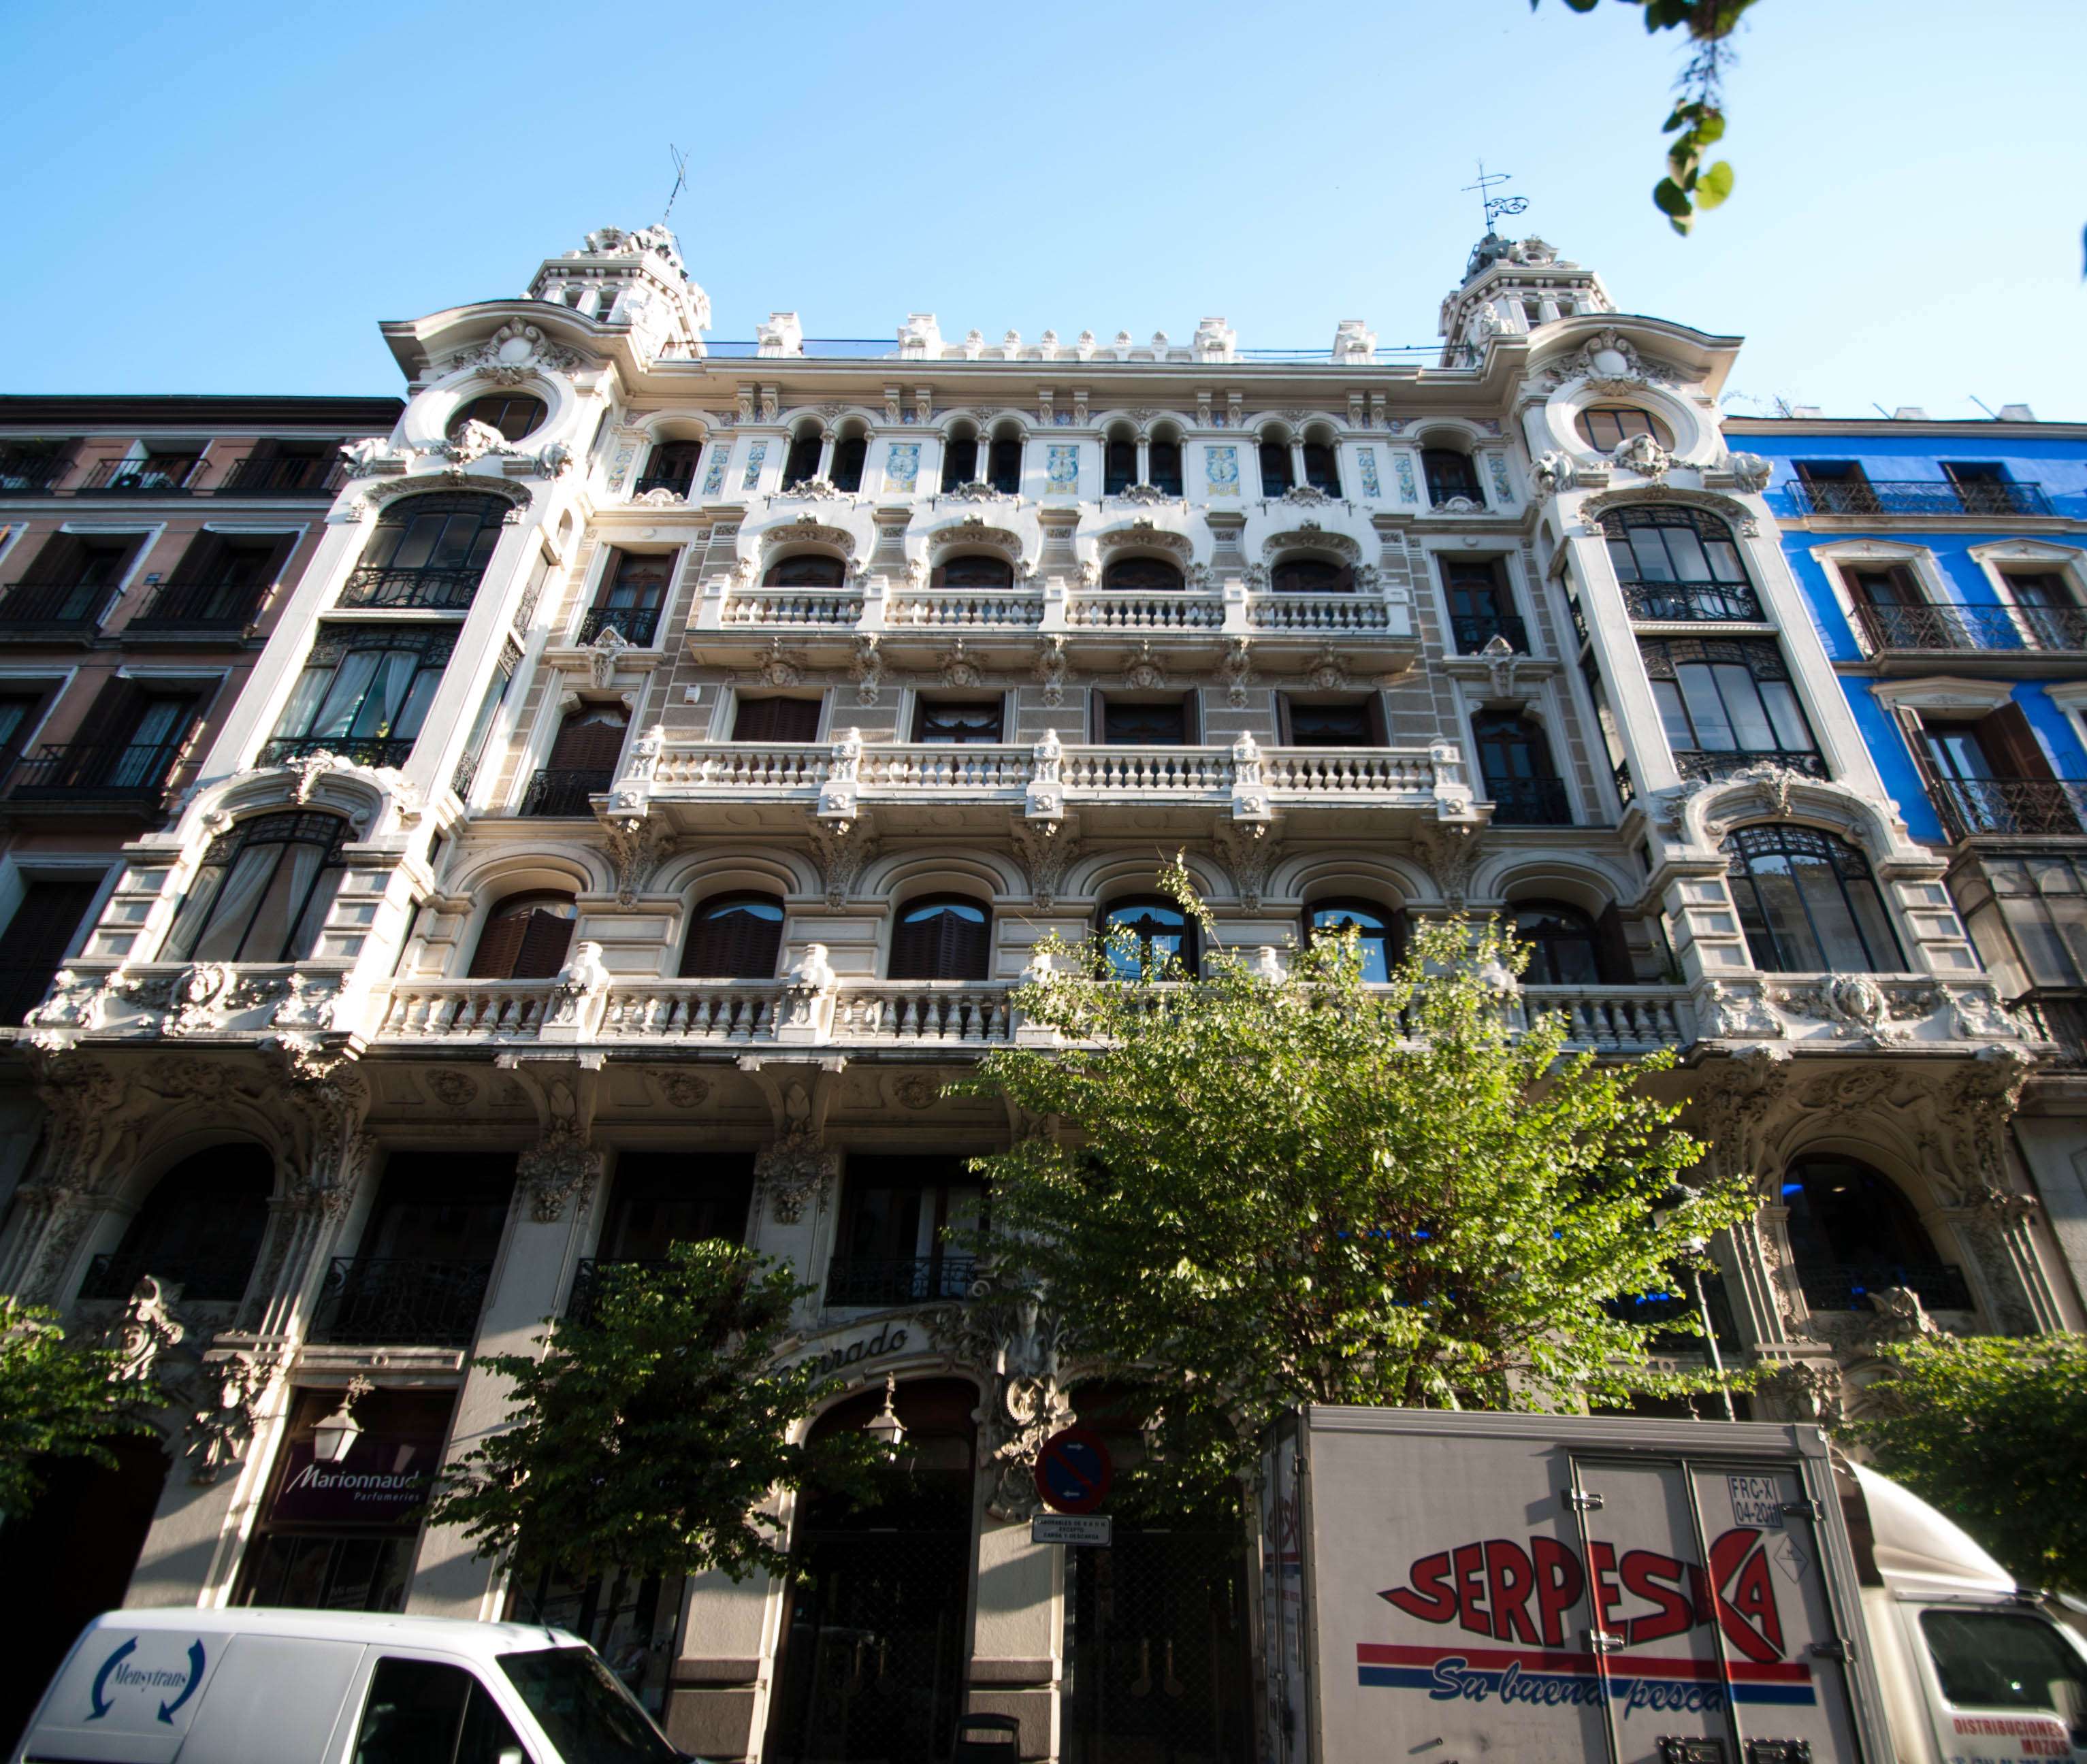 Un paseo modernista por la calle Mayor y aledaños - Paseos y Rutas por Madrid (4)